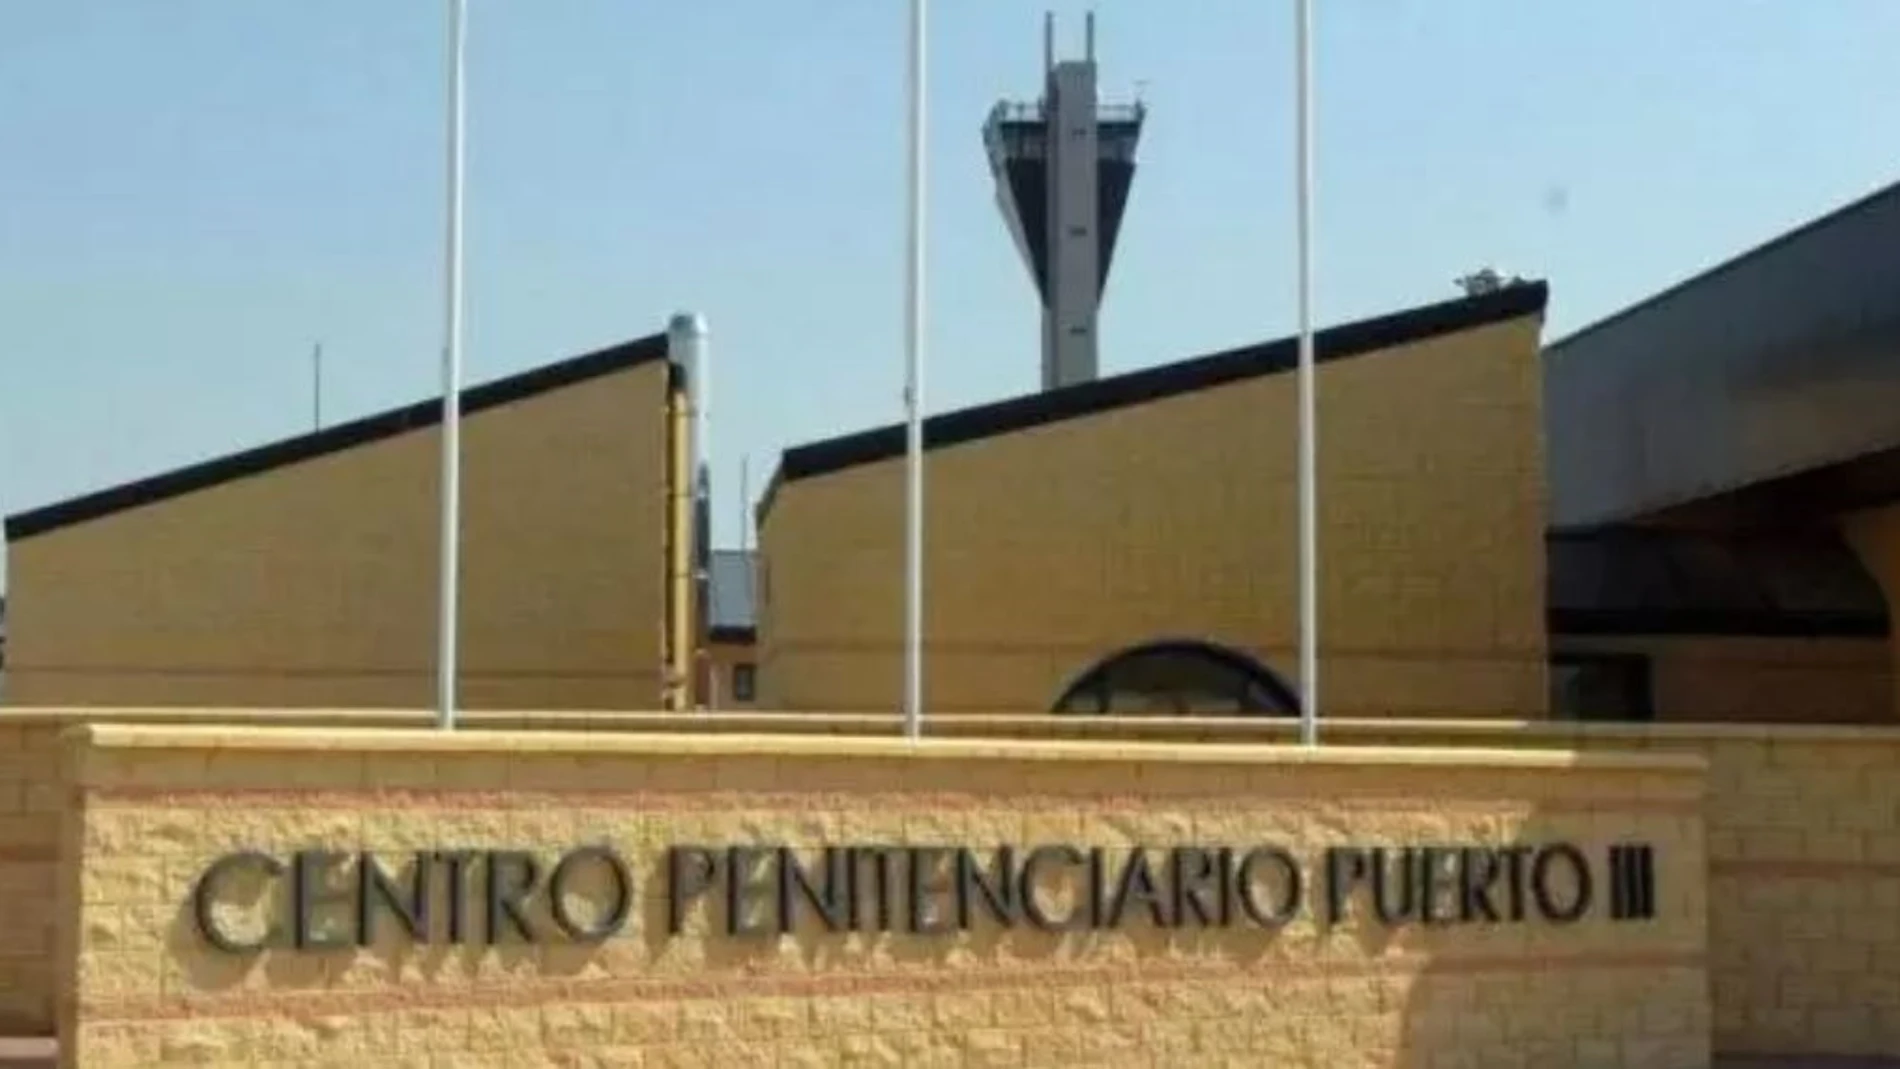 Imagen de la prisión gaditana Puerto III